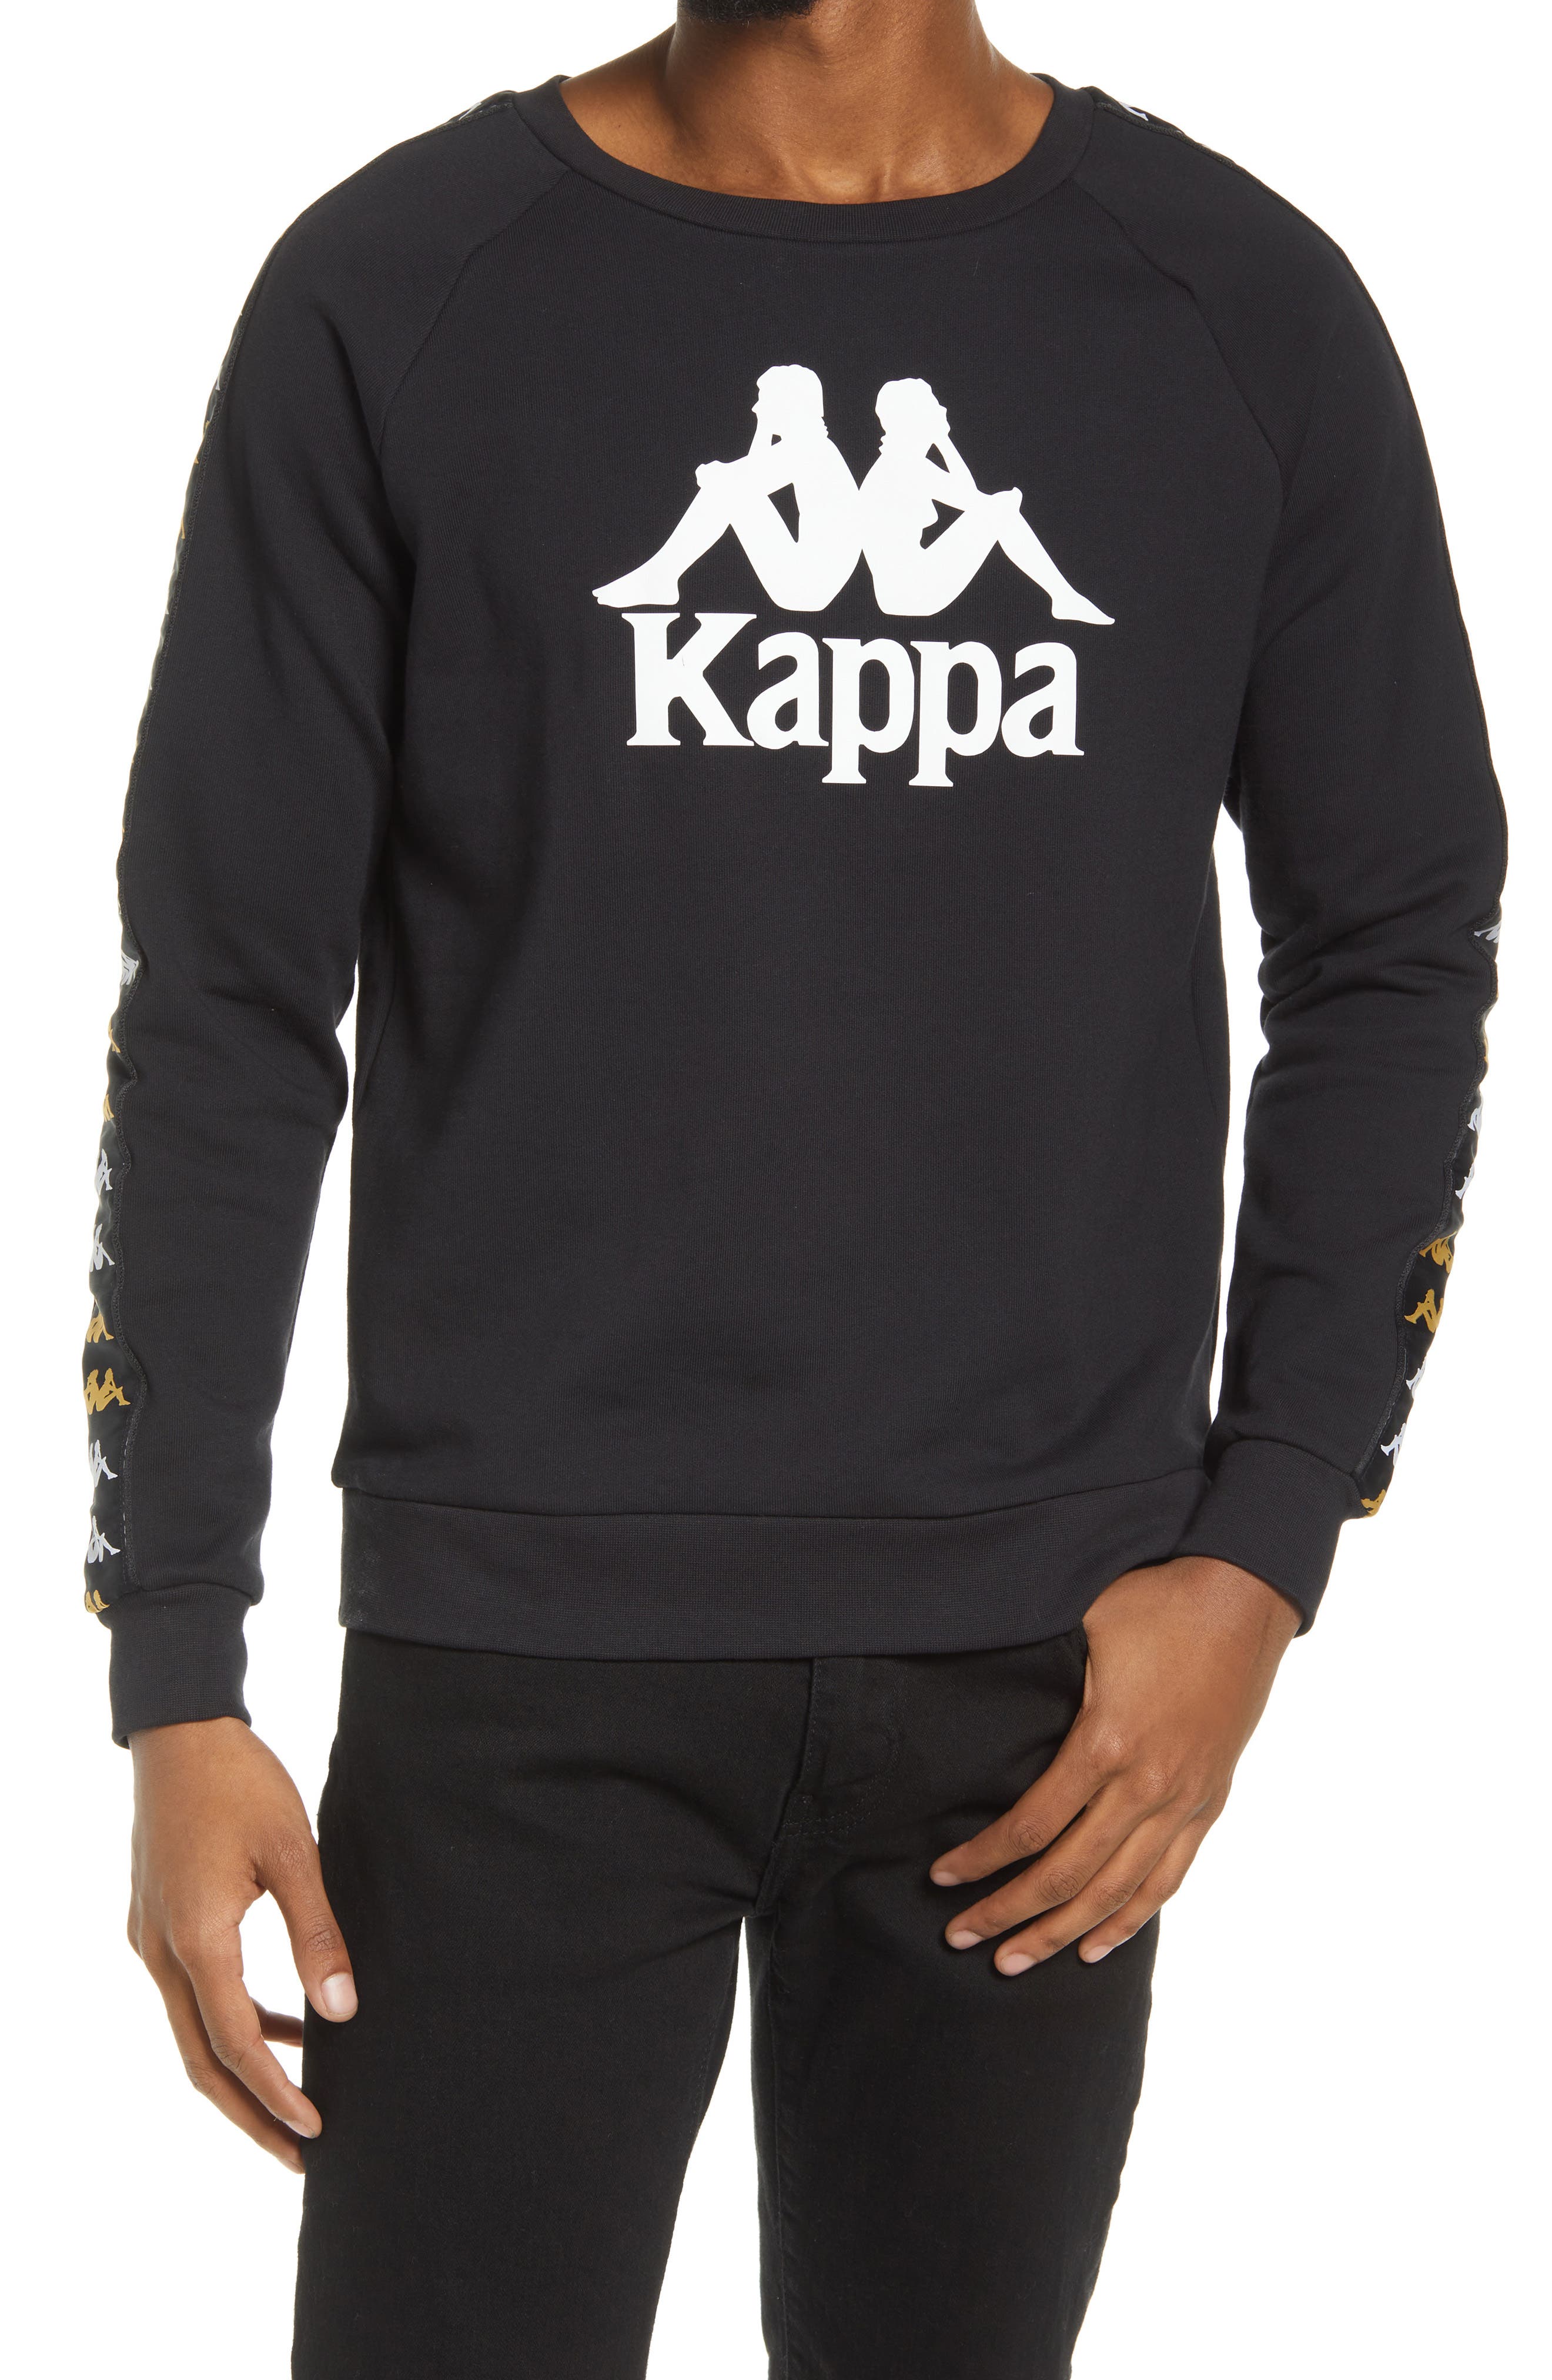 Kappa Men's 222 Banda Len Crewneck Sweatshirt in Black Smoke-Yellow-White at Nordstrom, Size Large